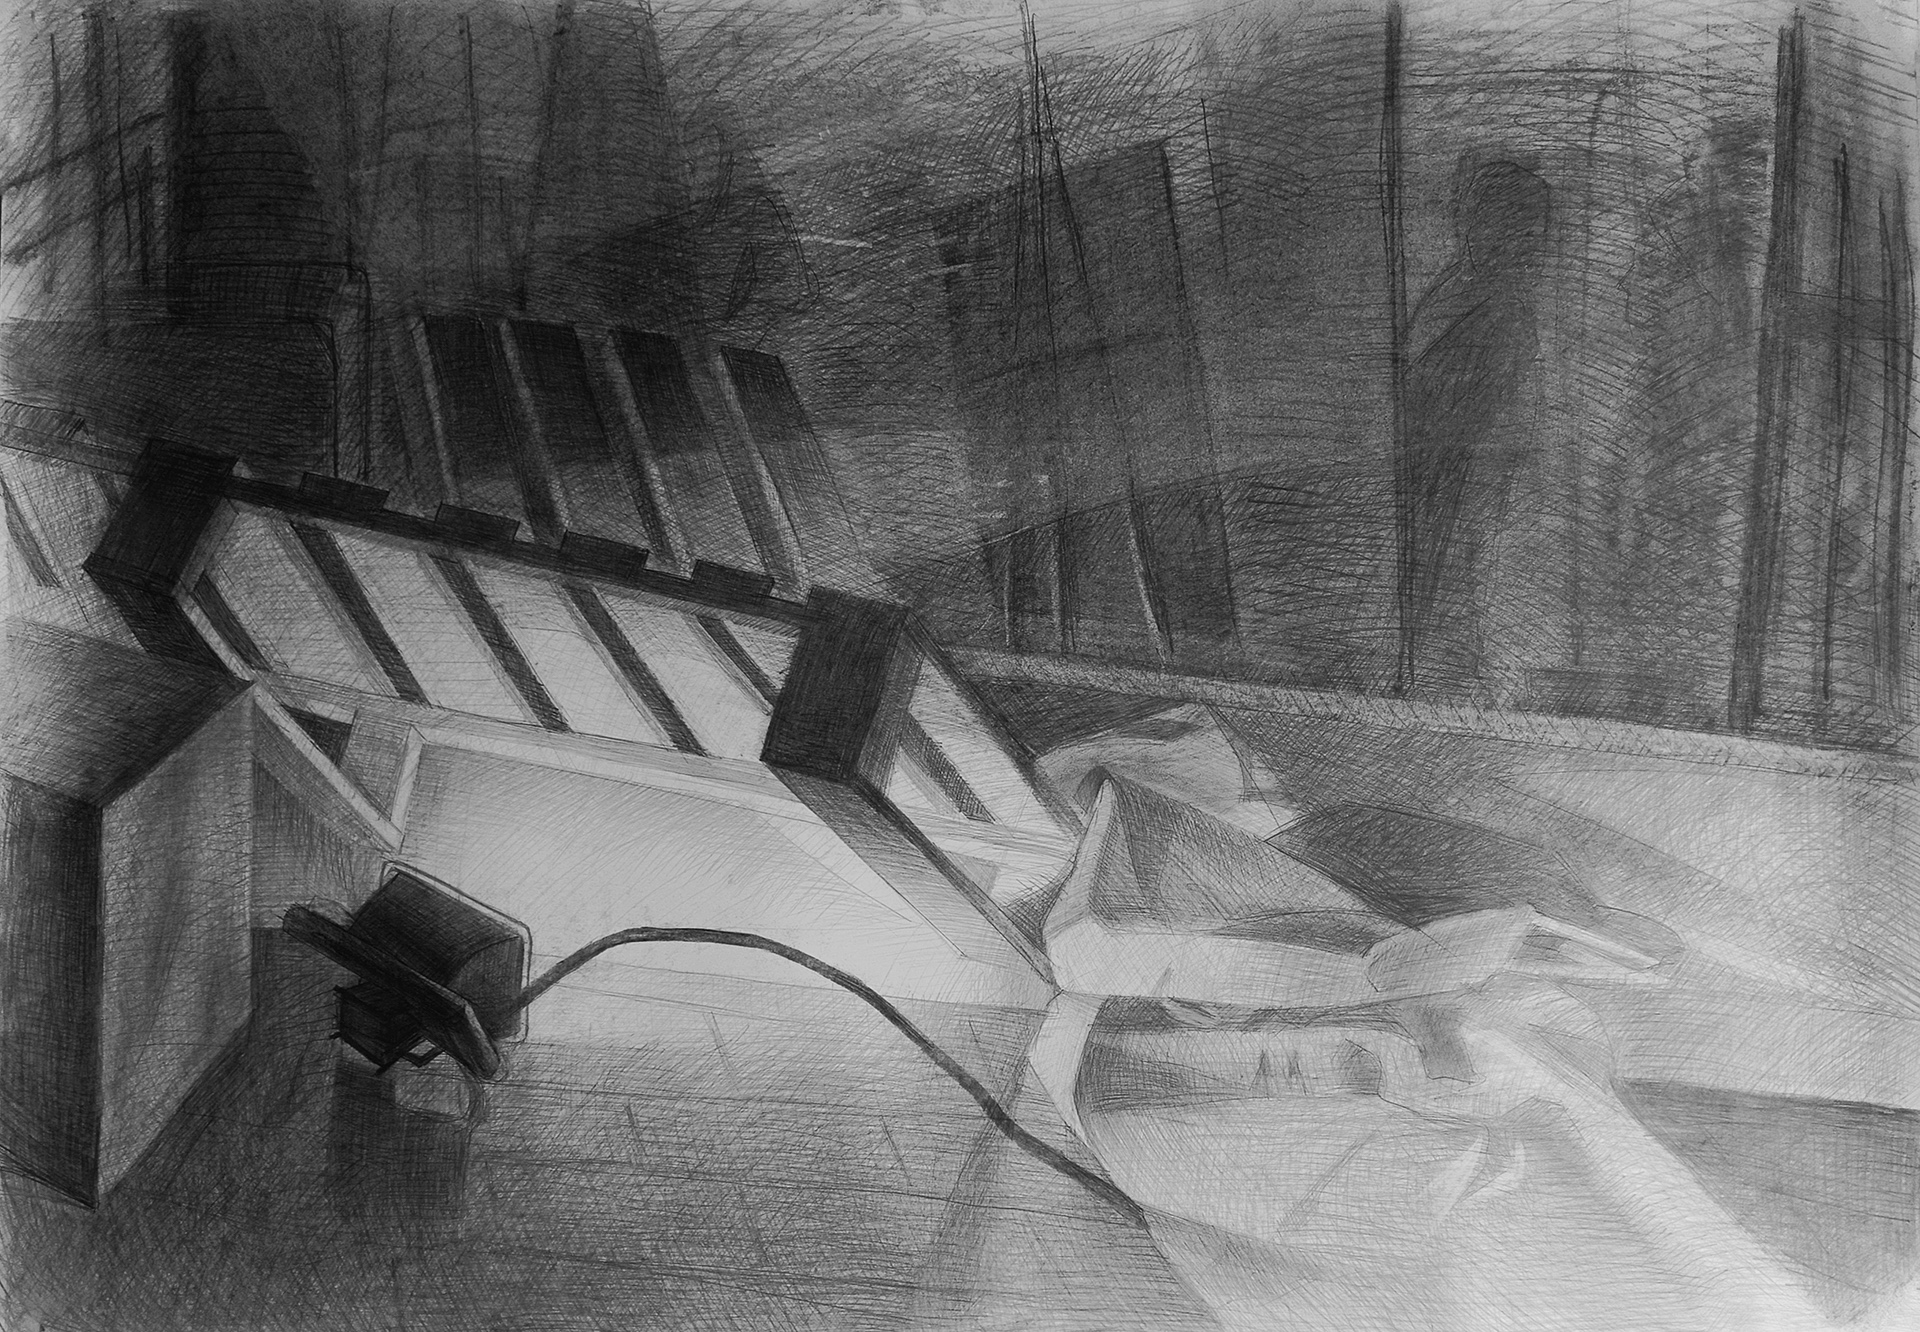 Horyzontalny rysunek wykonany ołówkiem na papierze przedstawiający martwą naturę z mocno oświetloną paletą na pierwszym planie oraz lustrem na dalszym planie z odbiciami wnętrza pracowni i postaci ludzkich.